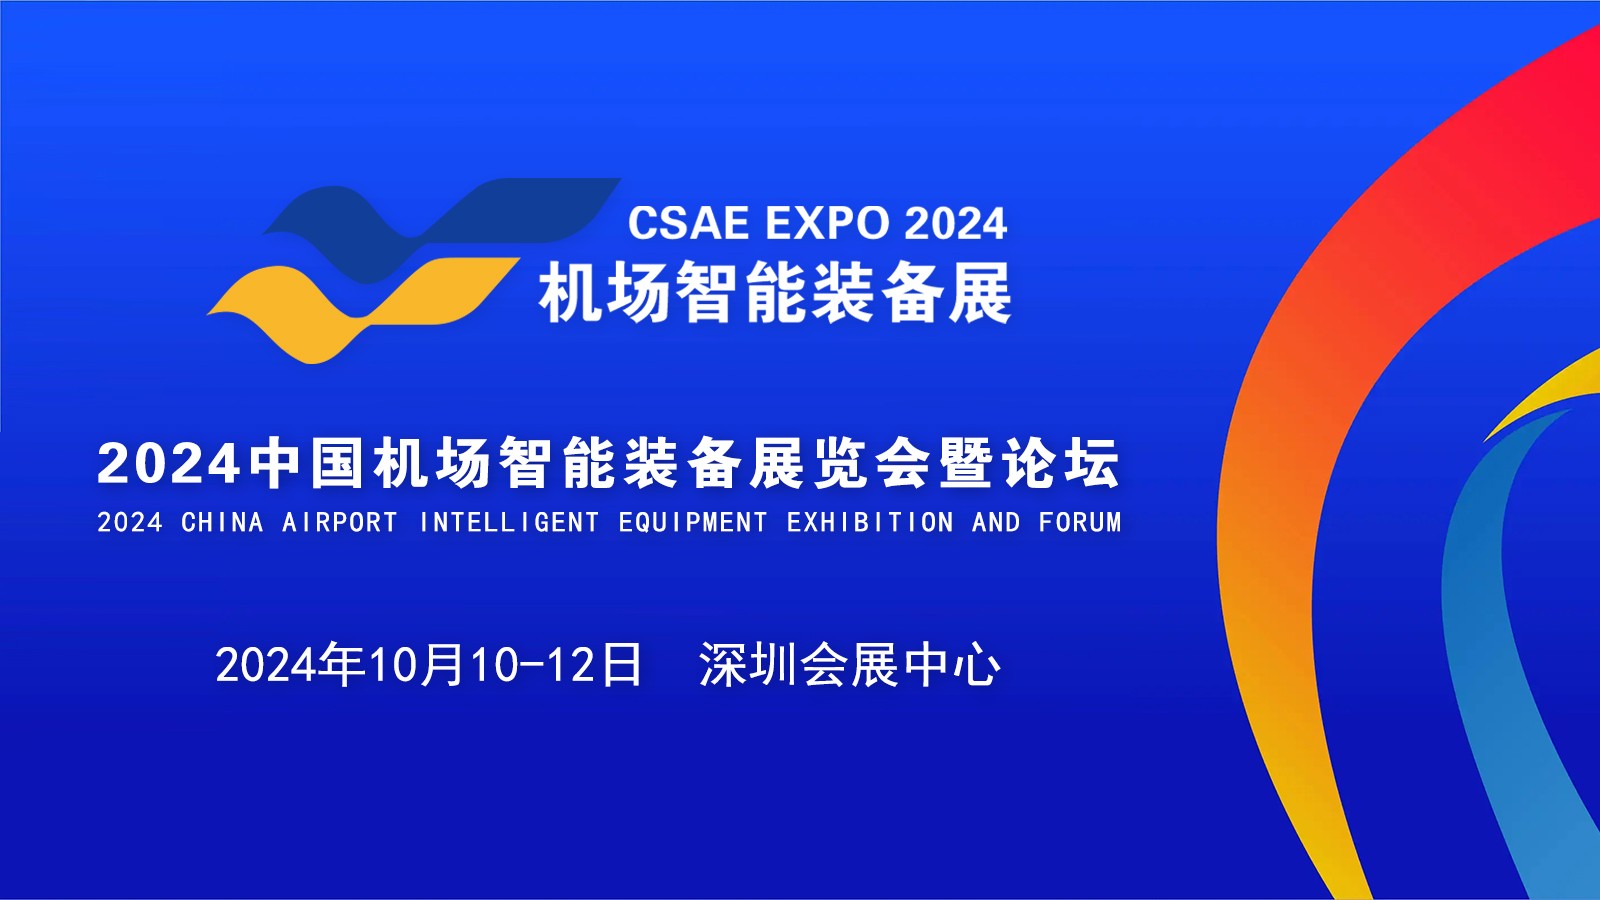 助力大湾区世界级机场群建设，2024中国机场智能装备展览会暨论坛10月在深圳举办